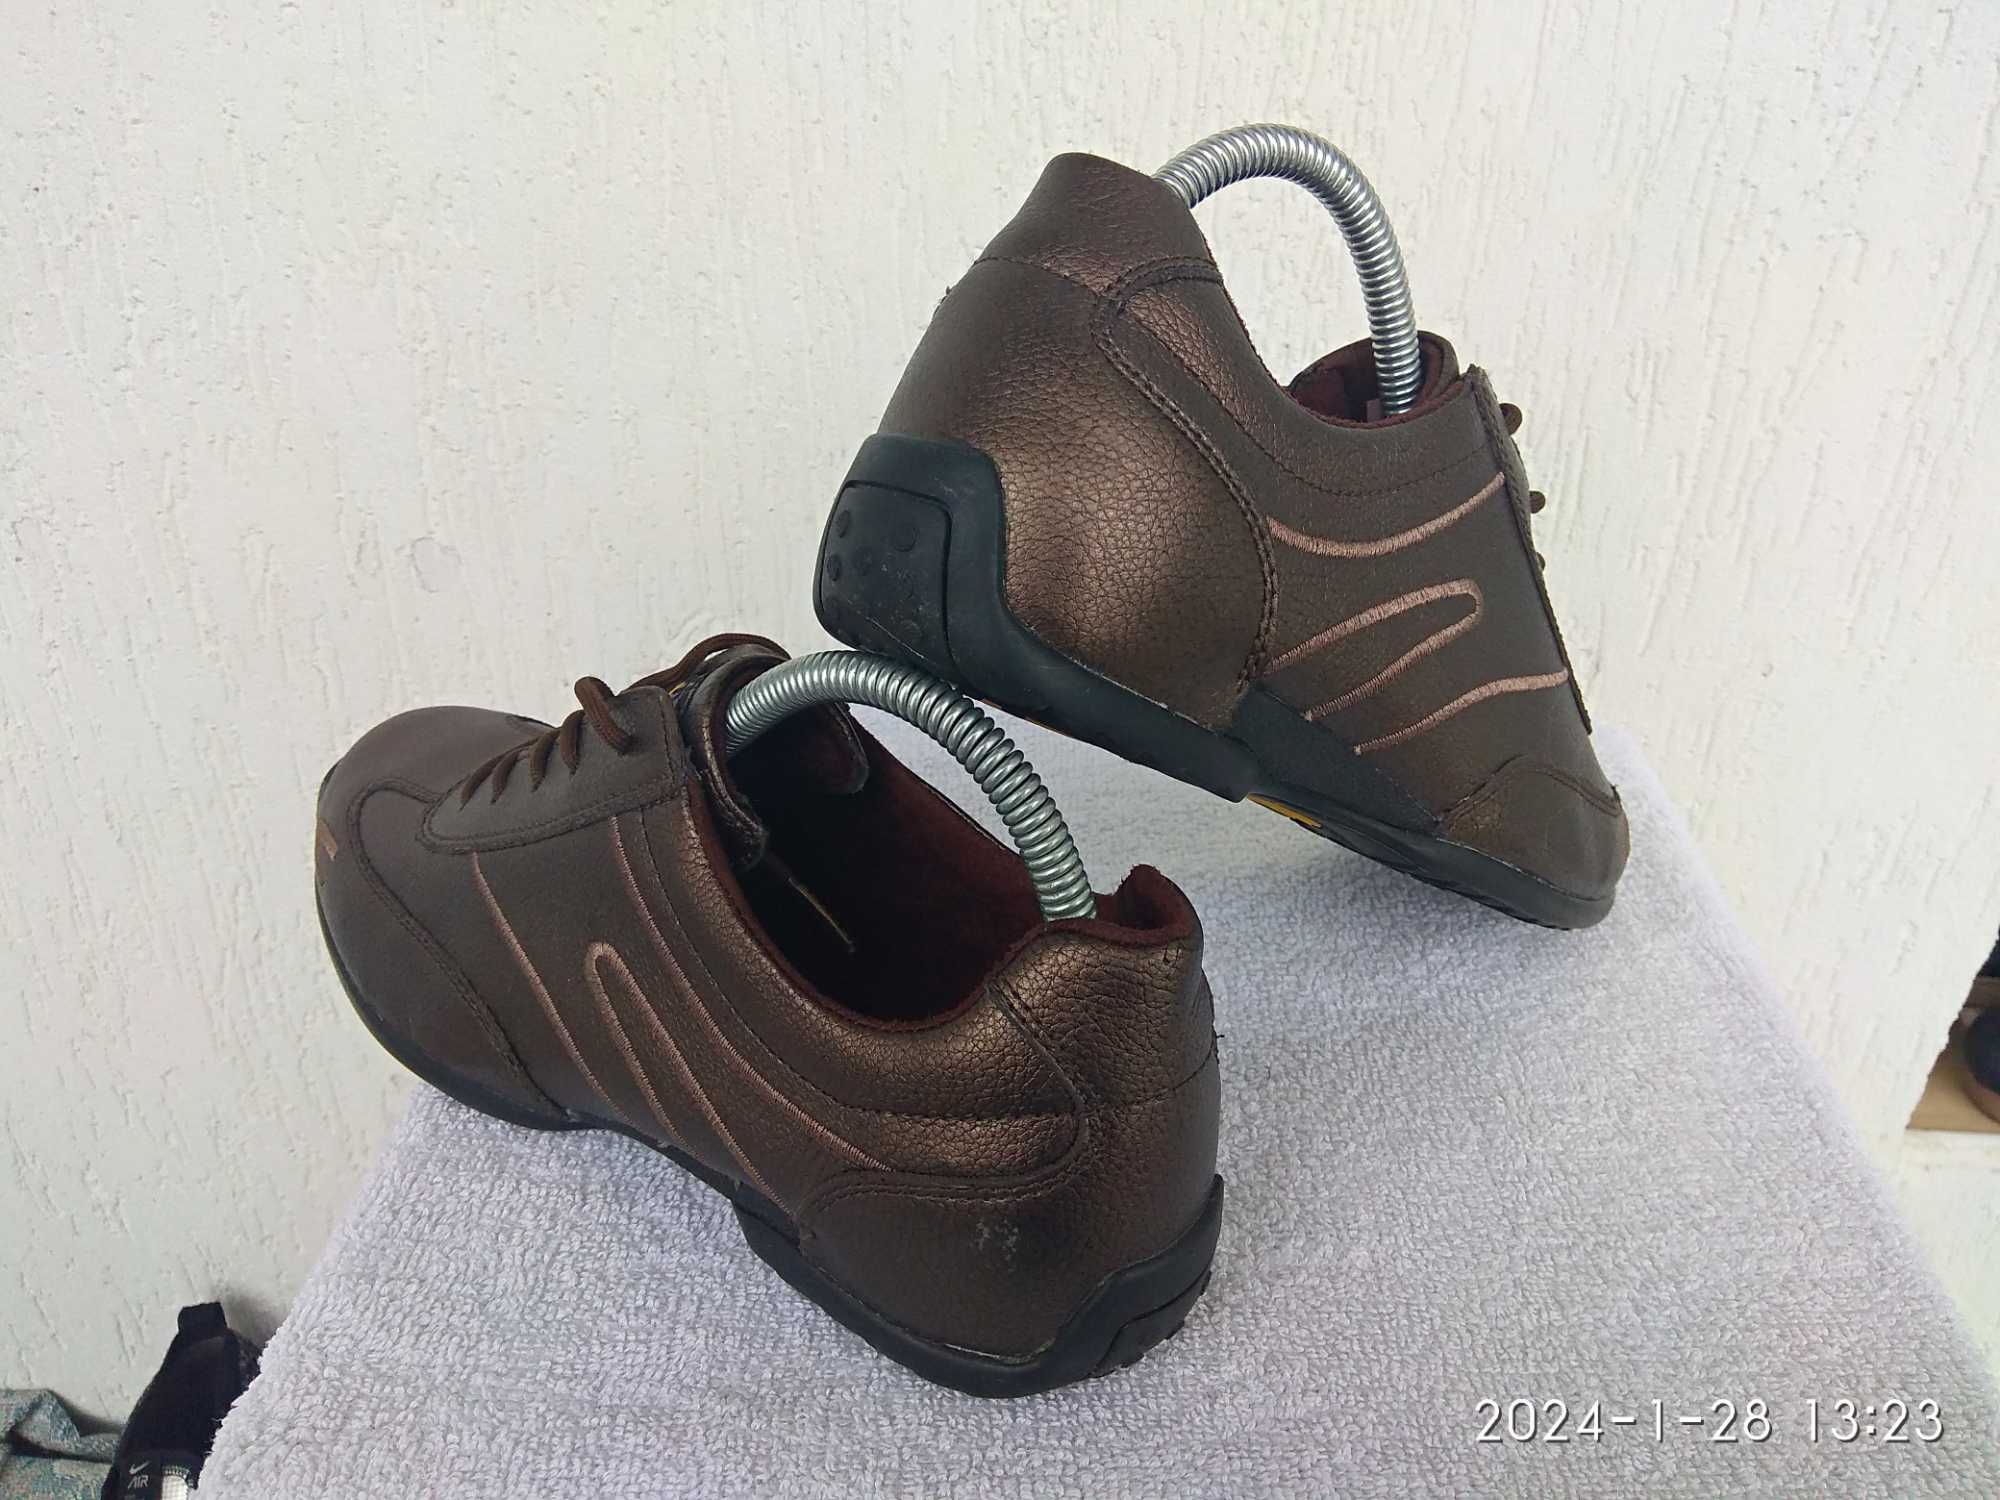 Спортивние туфли,кроссовки Camel Active р.39